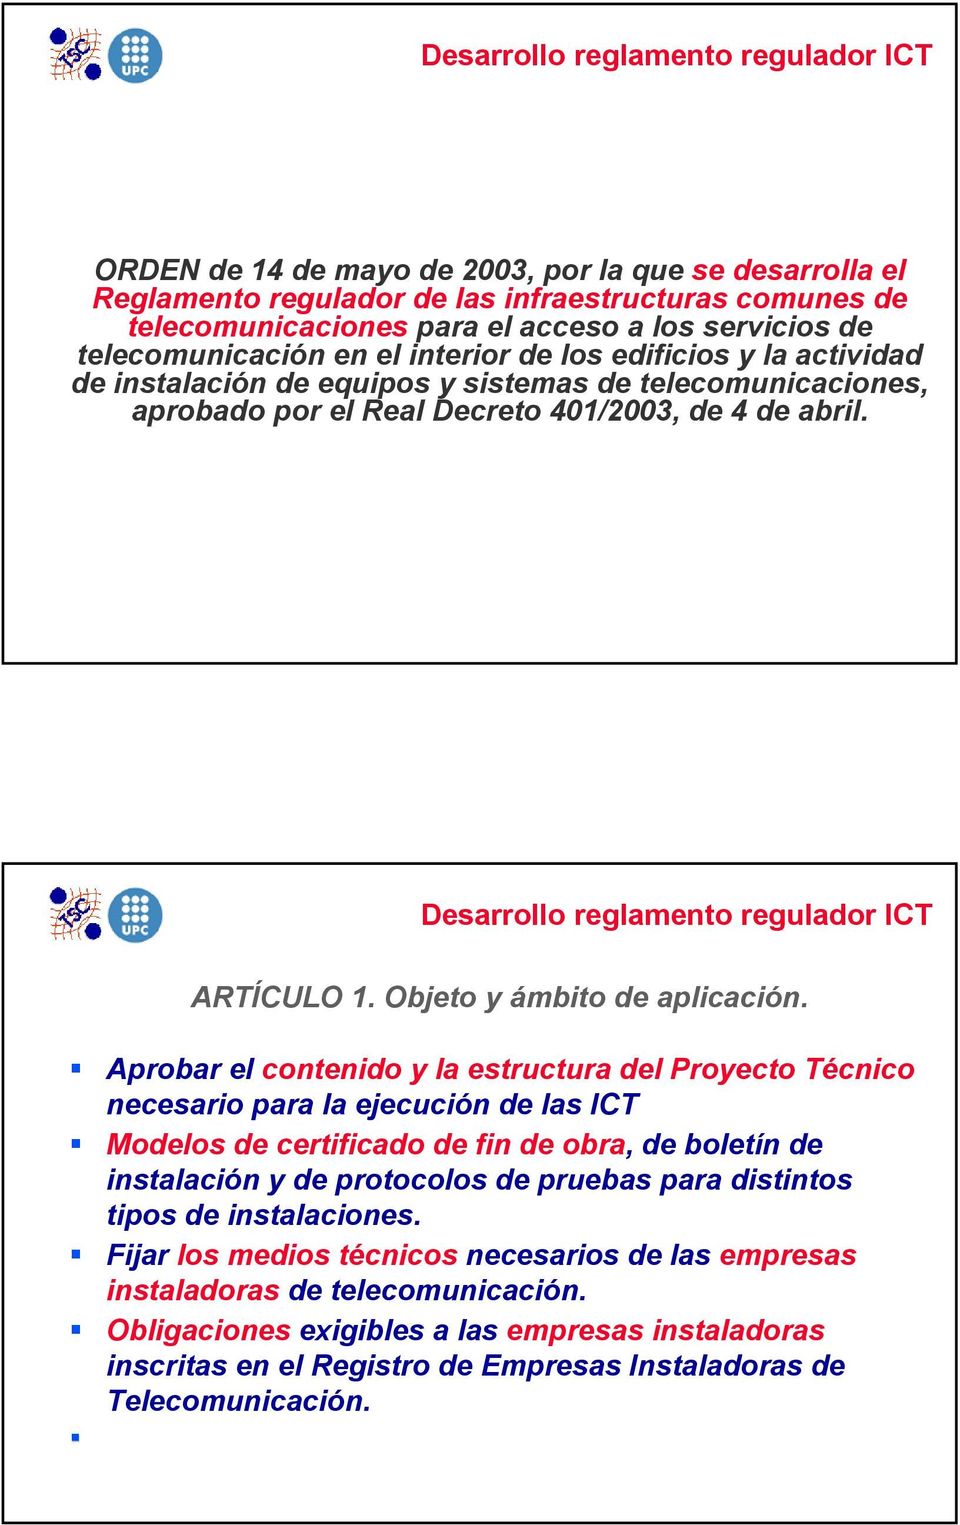 Desarrollo reglamento regulador ICT ARTÍCULO 1. Objeto y ámbito de aplicación.